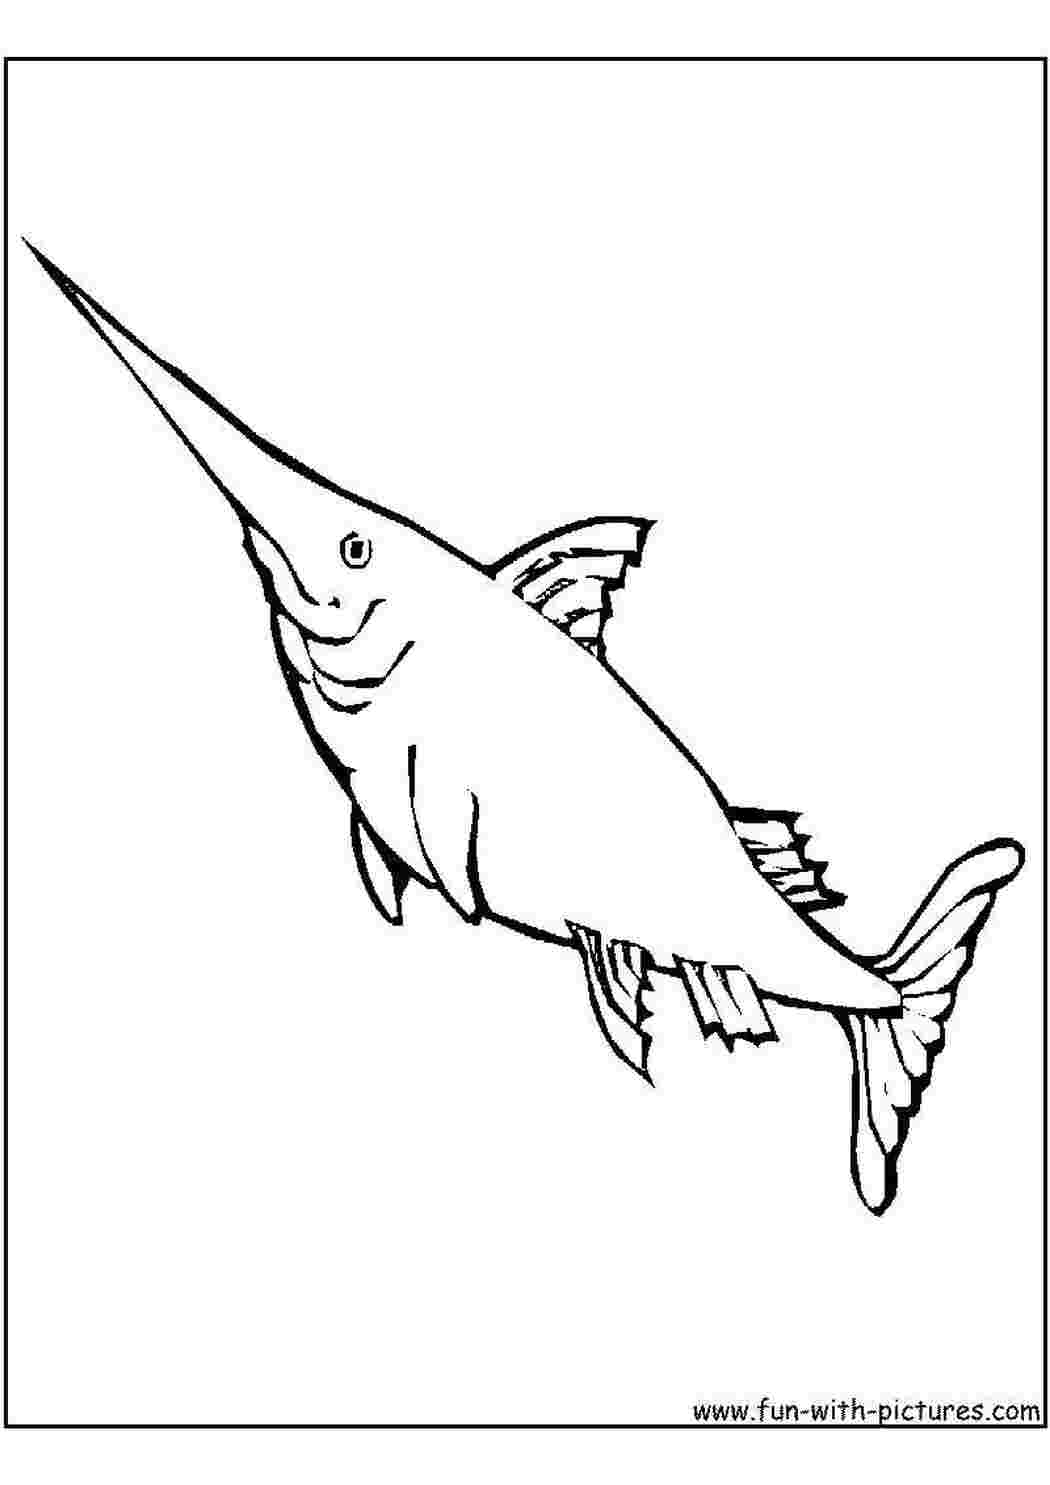 Раскраски Острый меч акулы раскраски Подводный мир, рыба